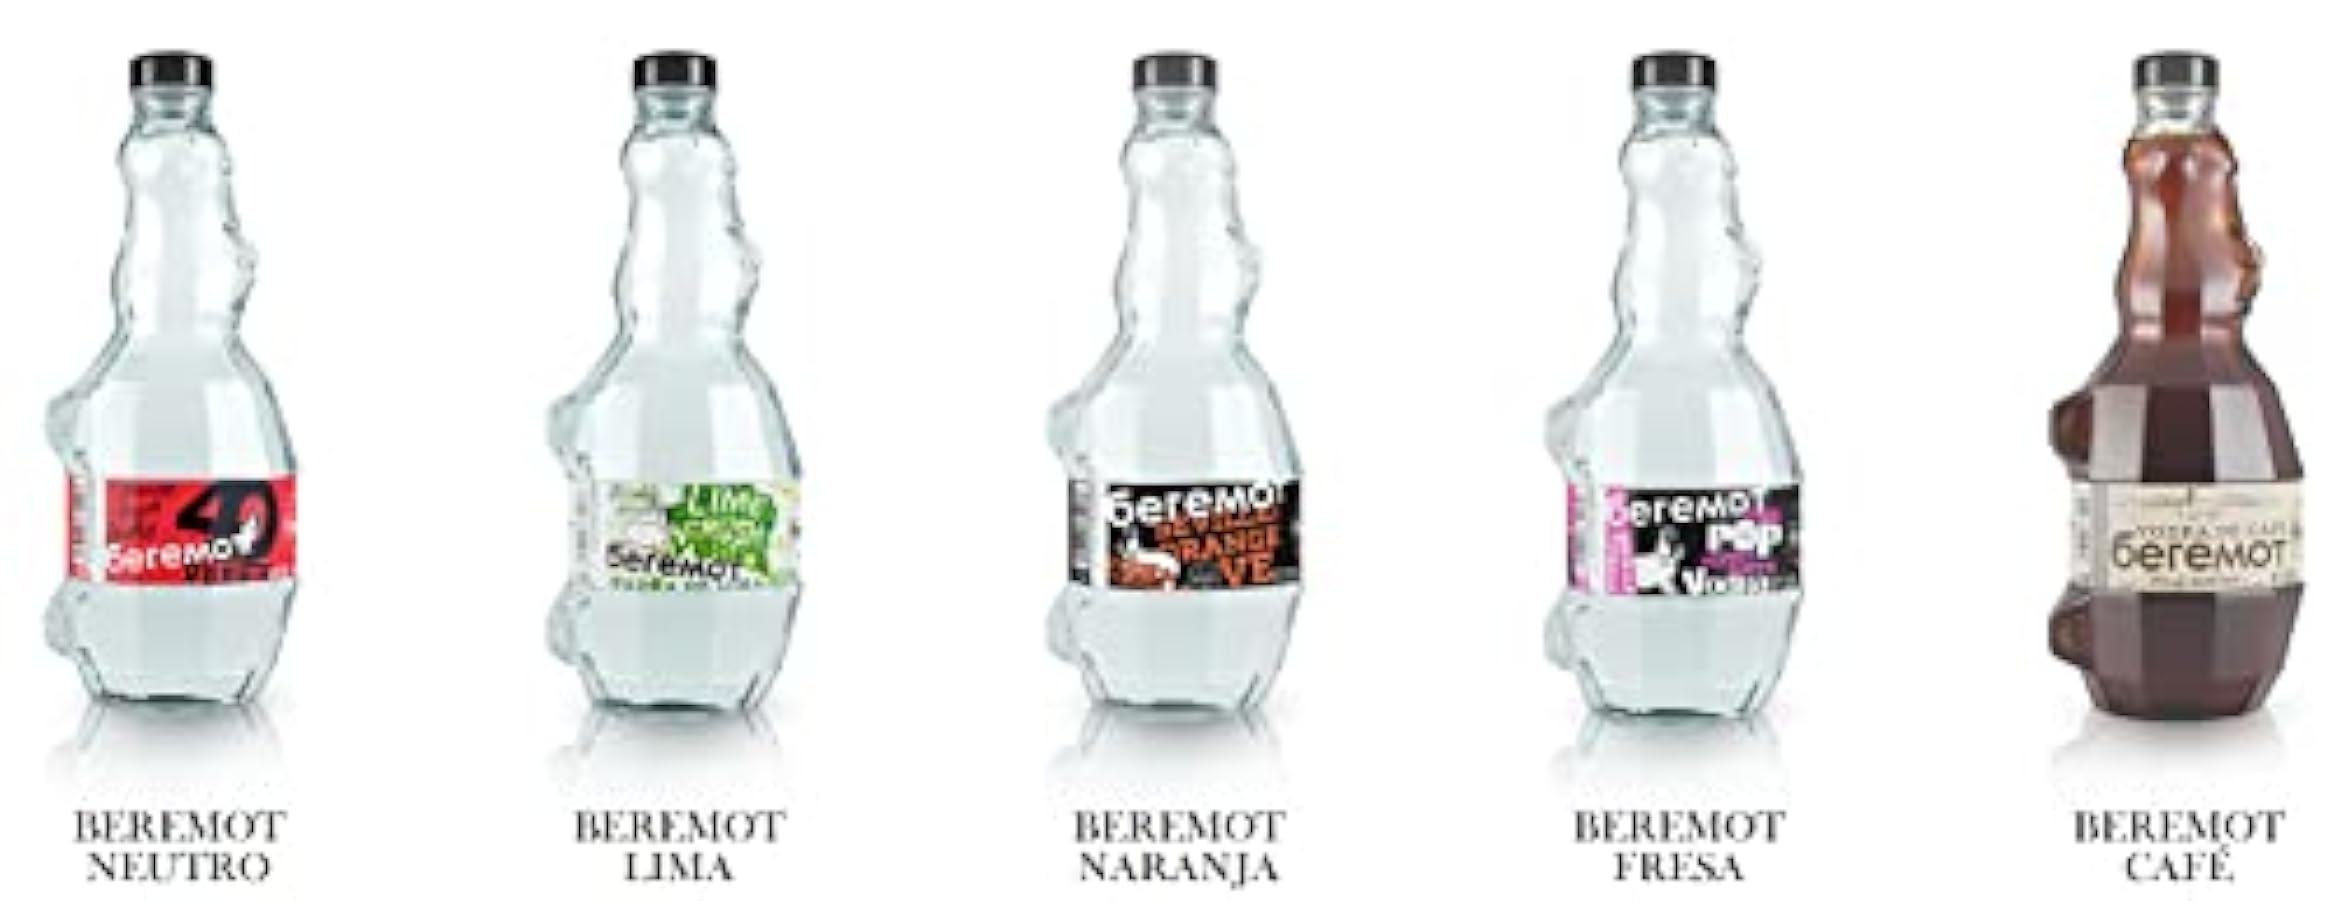 Vodka Beremot 70cl al 40% di alcol 994509759